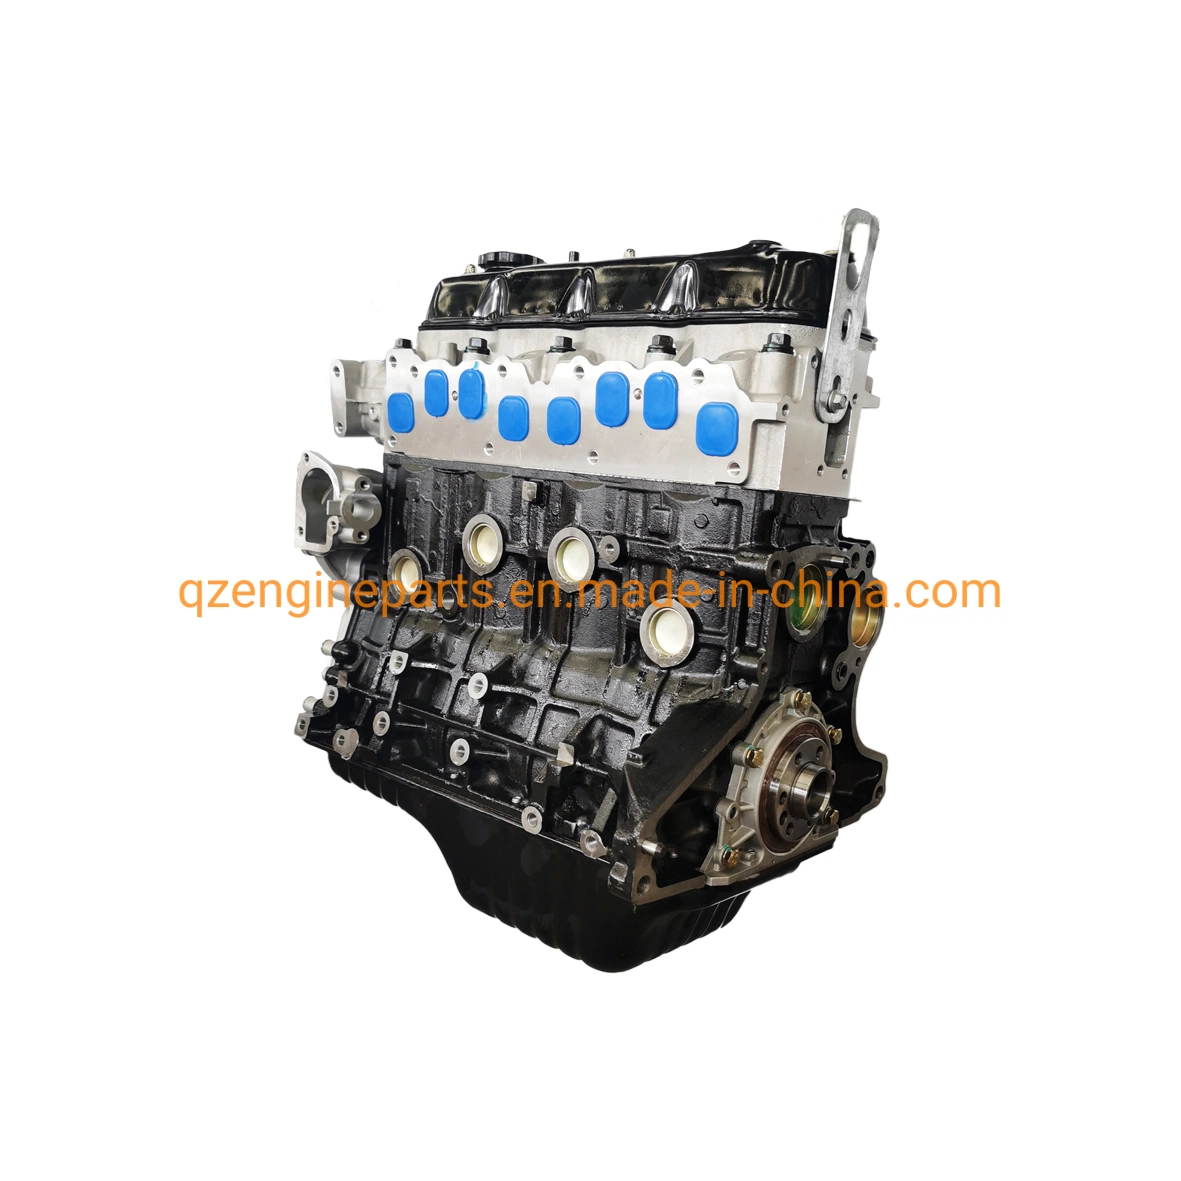 L'essence auto moteur 4 cylindres moteur nu bloc long 4y 491q pour Toyota Haice moteur